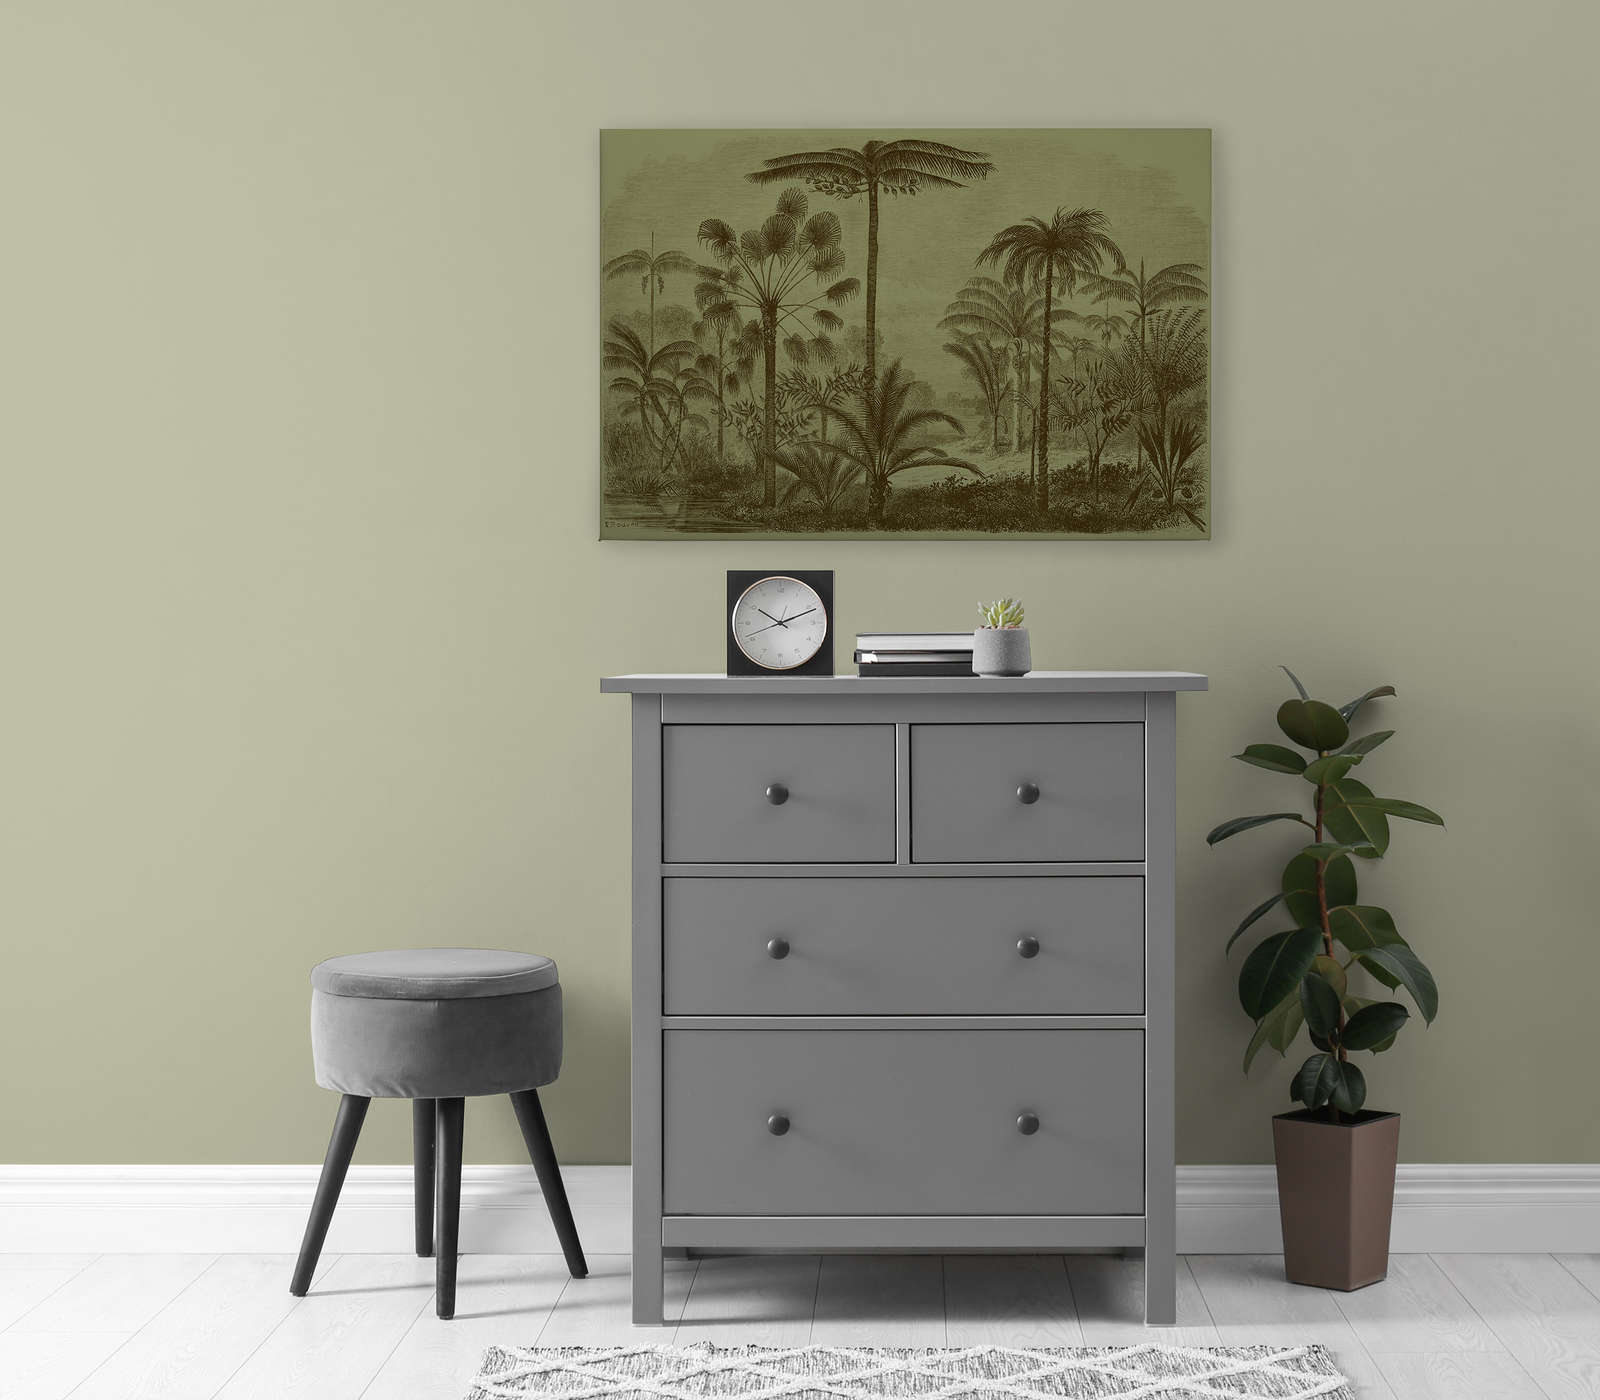             Jurassic 1 - Toile motif jungle gravure sur cuivre - 0,90 m x 0,60 m
        